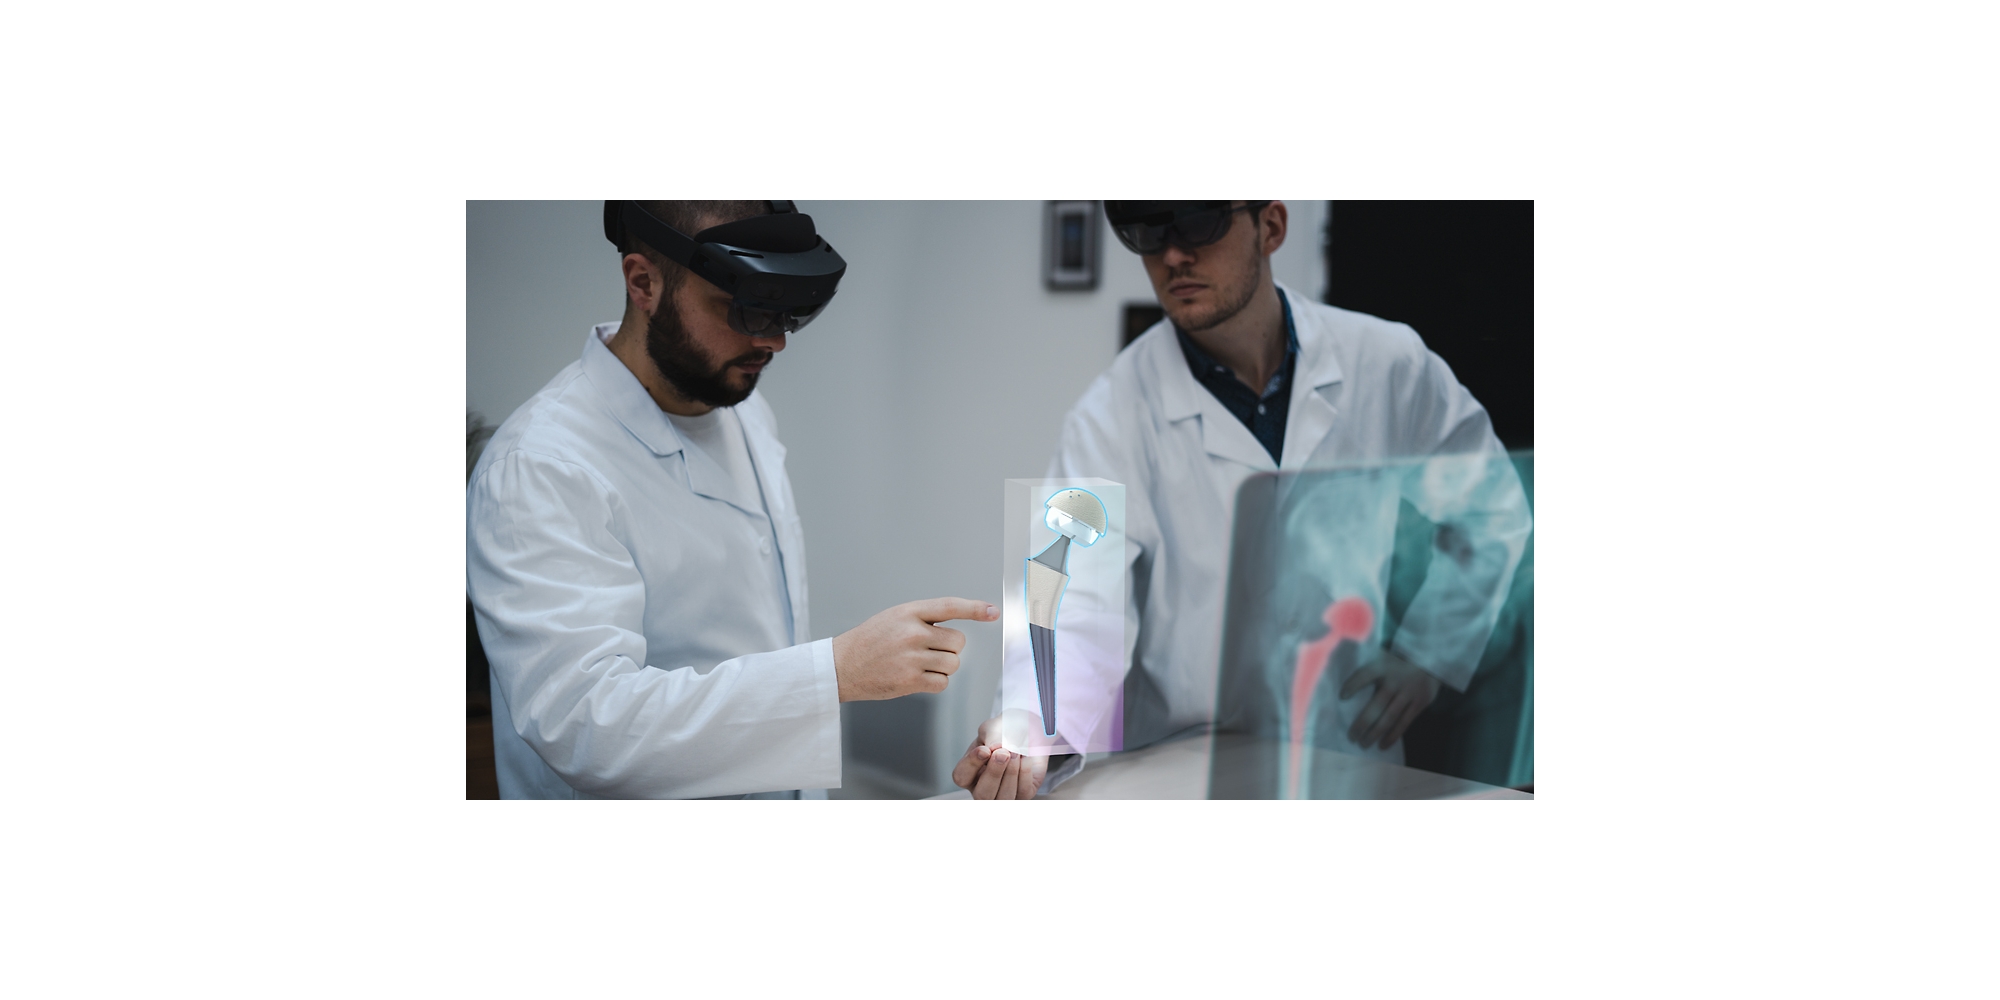 Zwei medizinische Fachkräfte verwenden HoloLens 2 Geräte, um ein Röntgenbild in Mixed Reality zu betrachten.